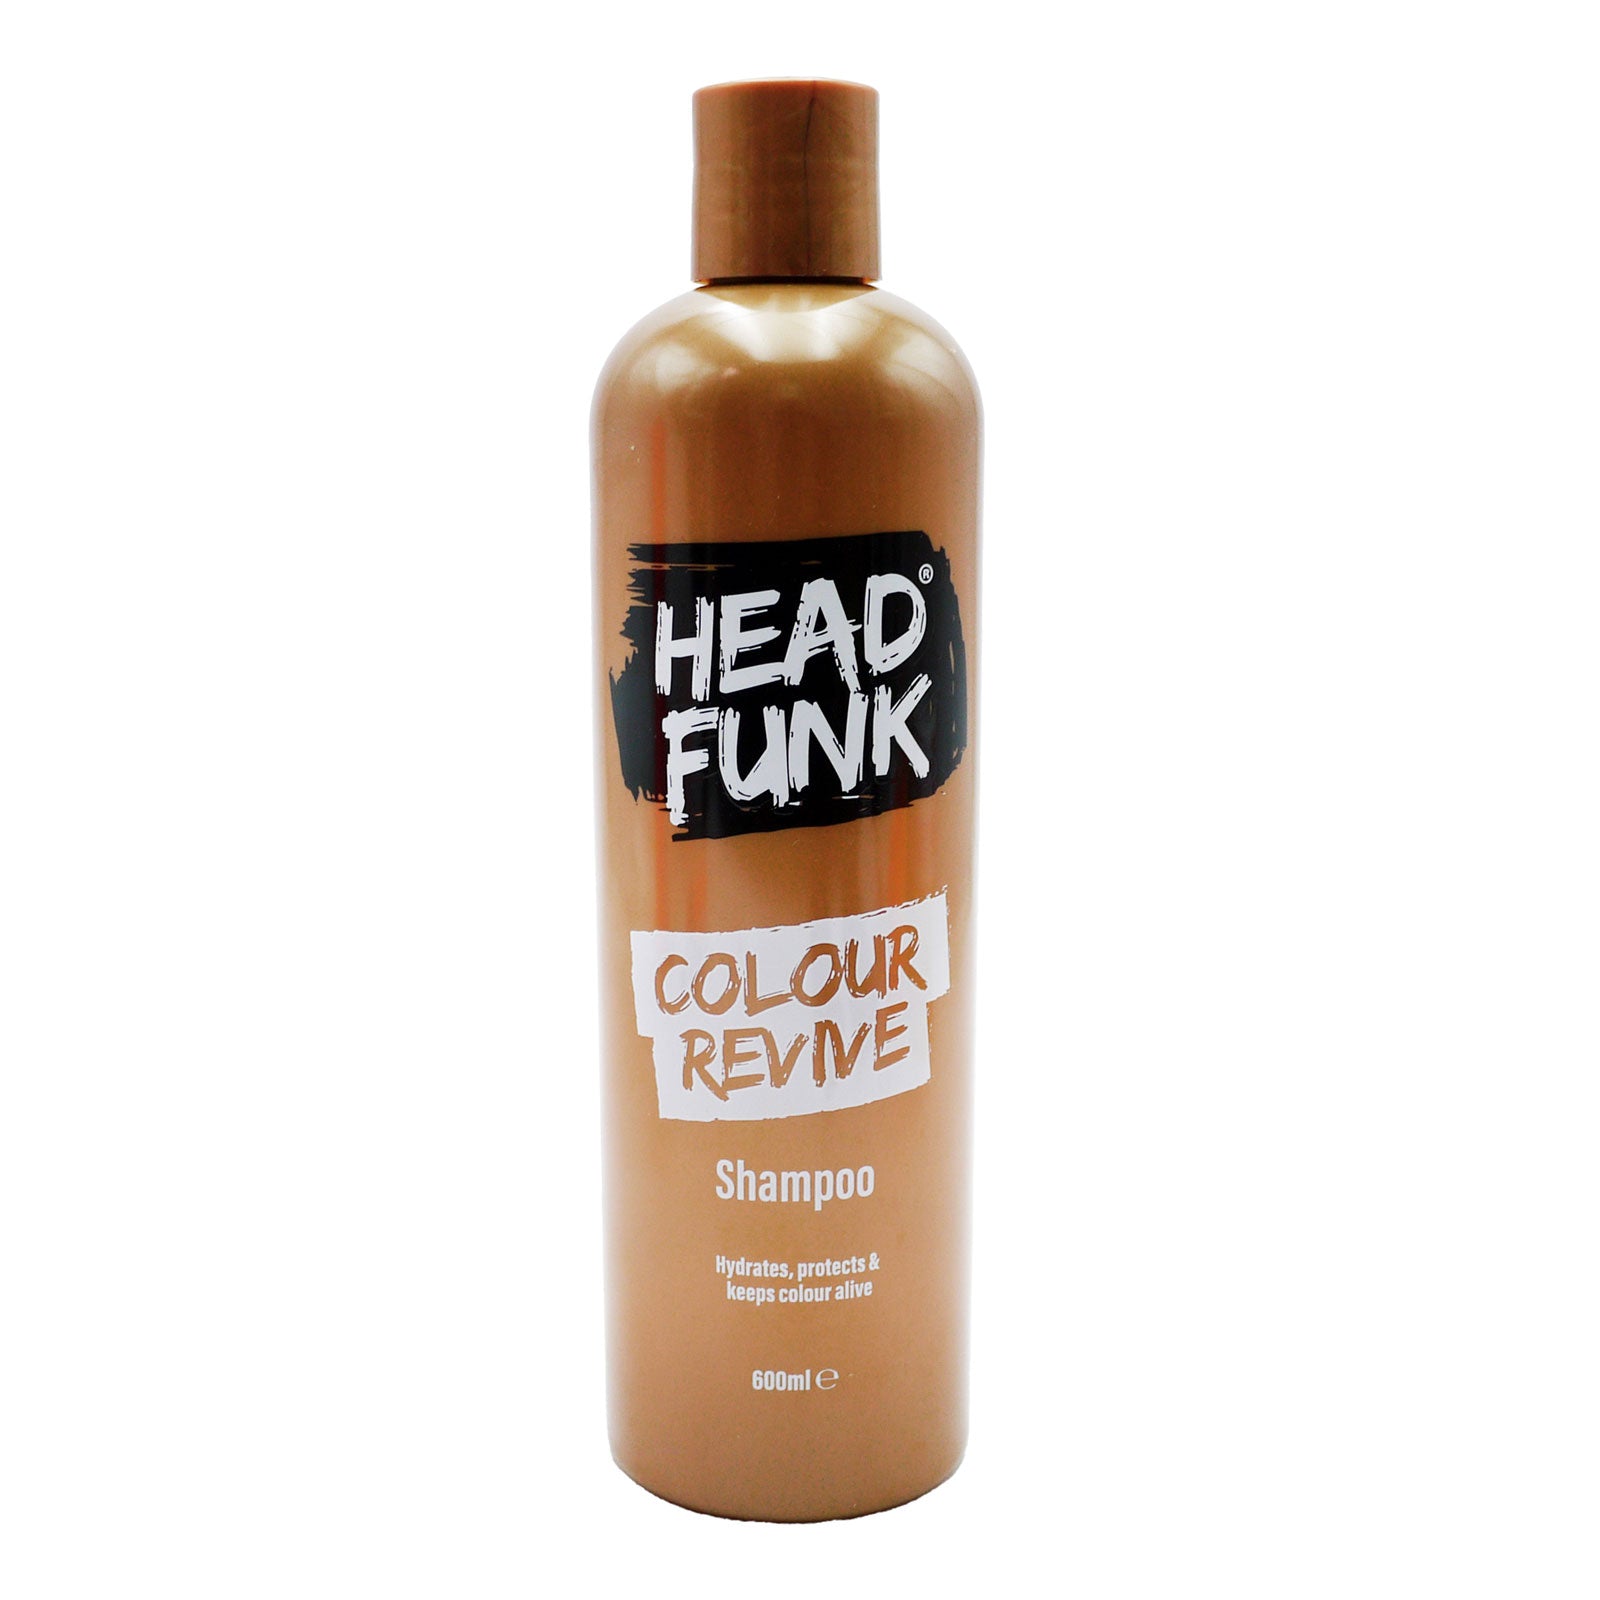 Head Funk Colour revive shampoo 600ml